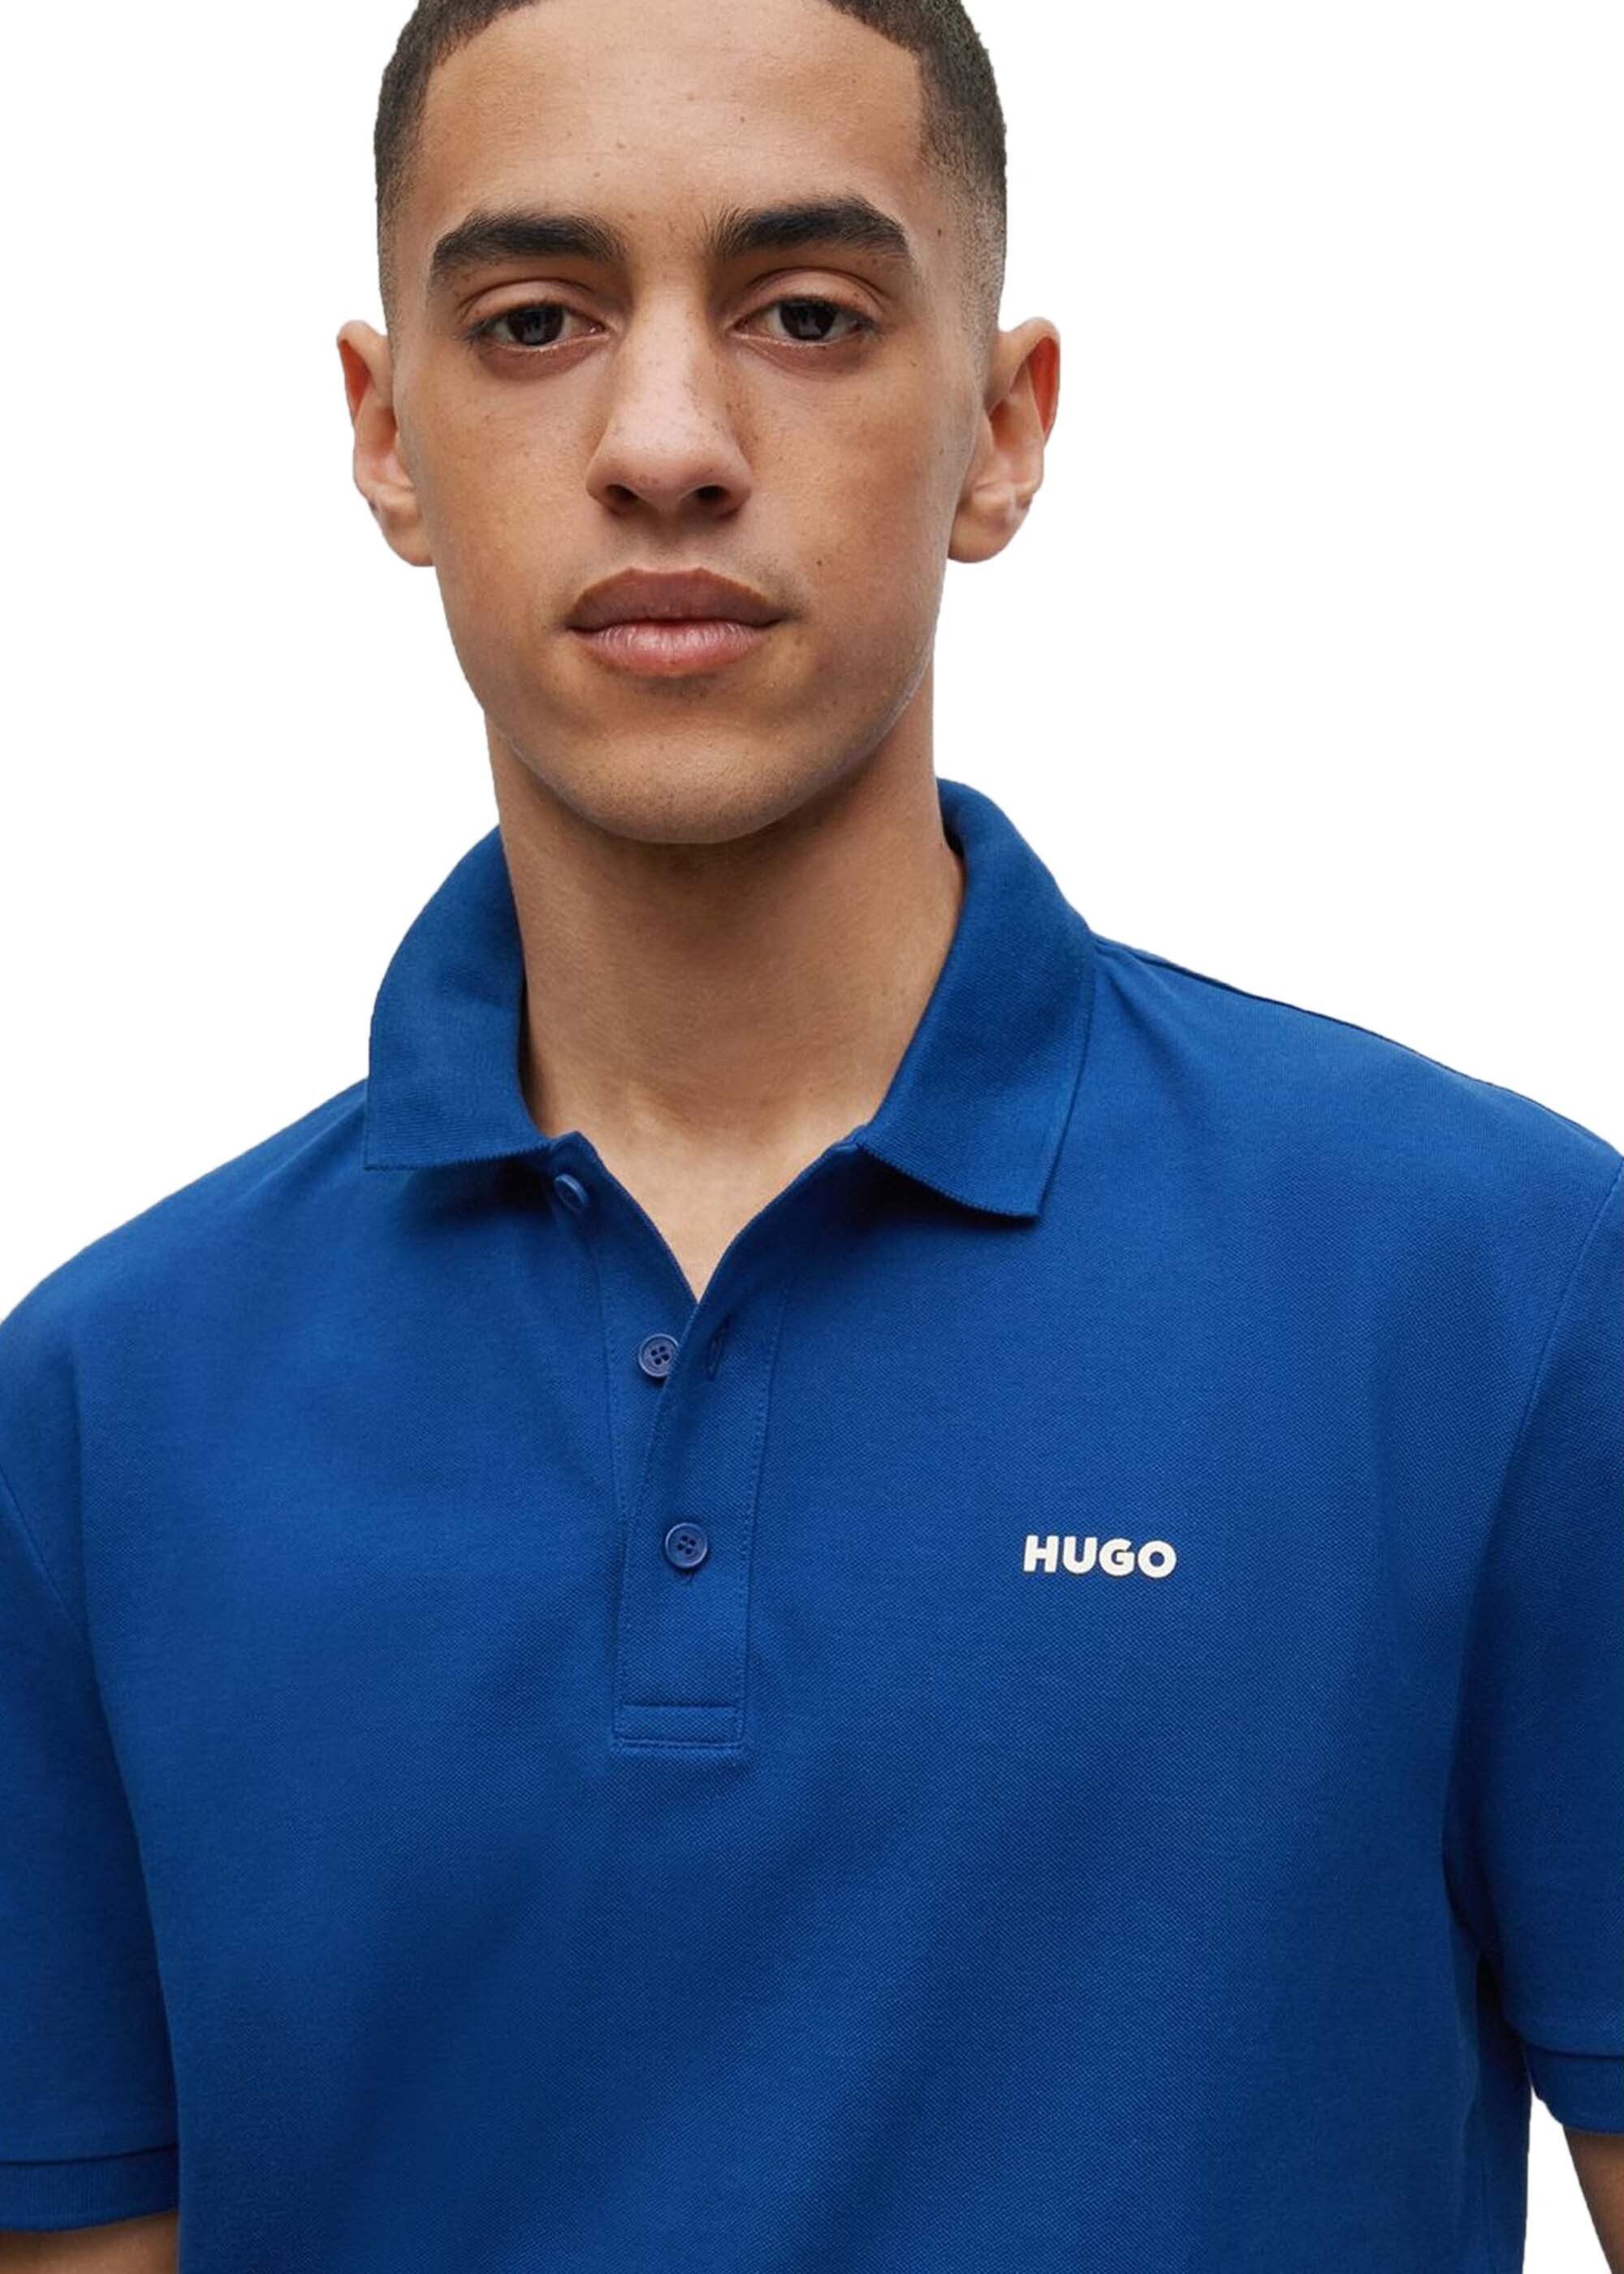 HUGO Poloshirt Herren Polo-Shirt 1/2-Arm (Navy) Blau Pique, - DONOS222